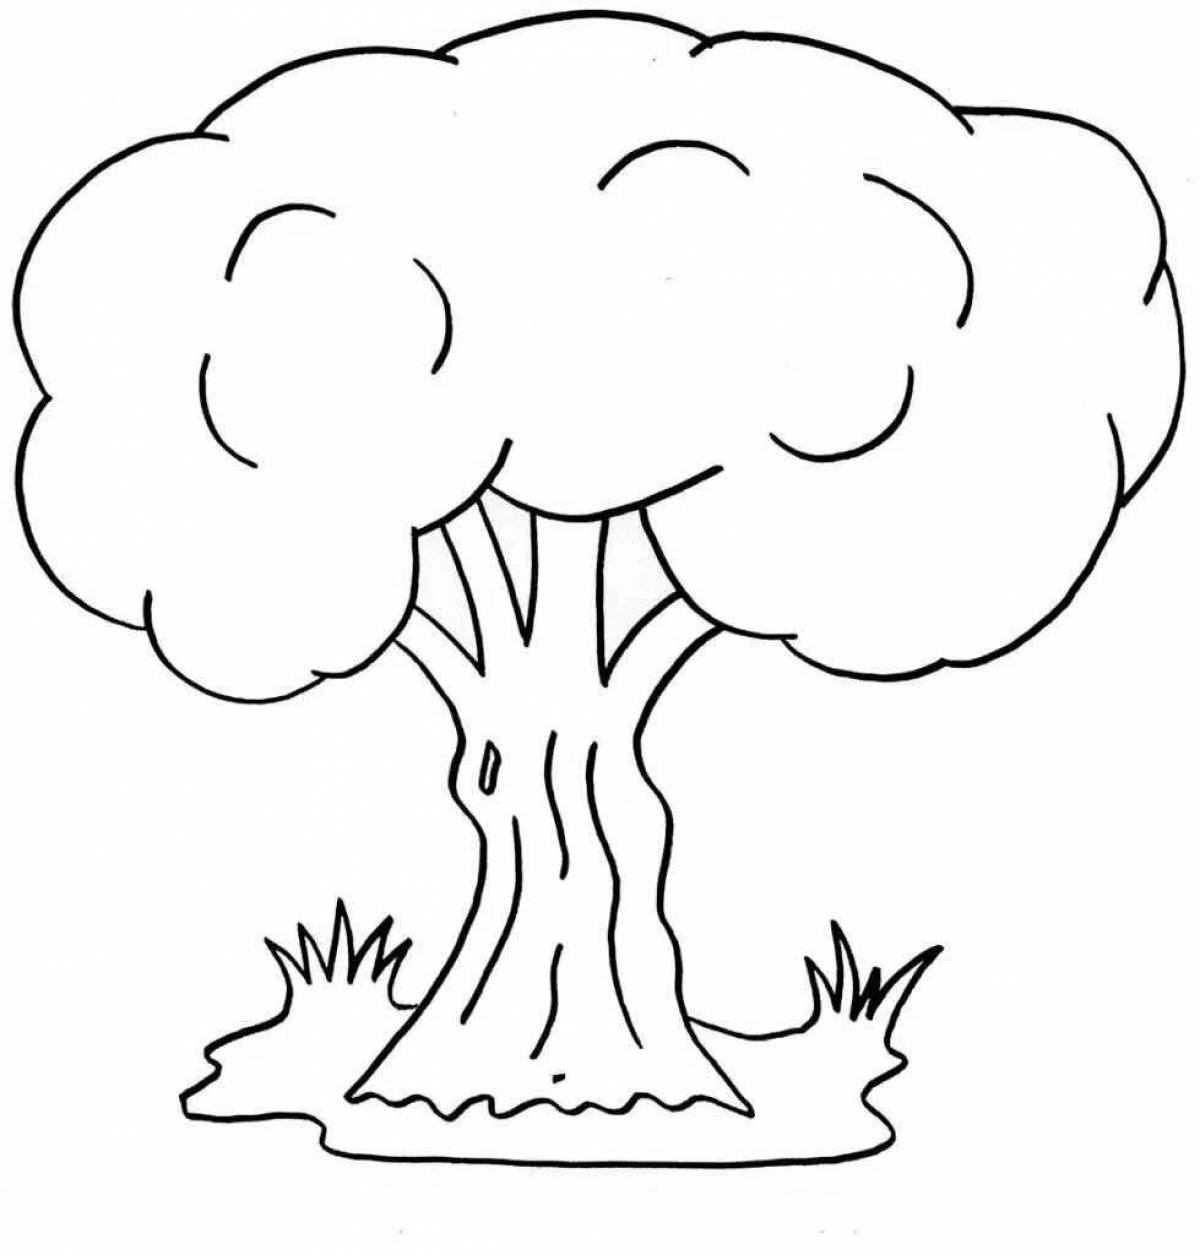 Fun tree drawing for kids